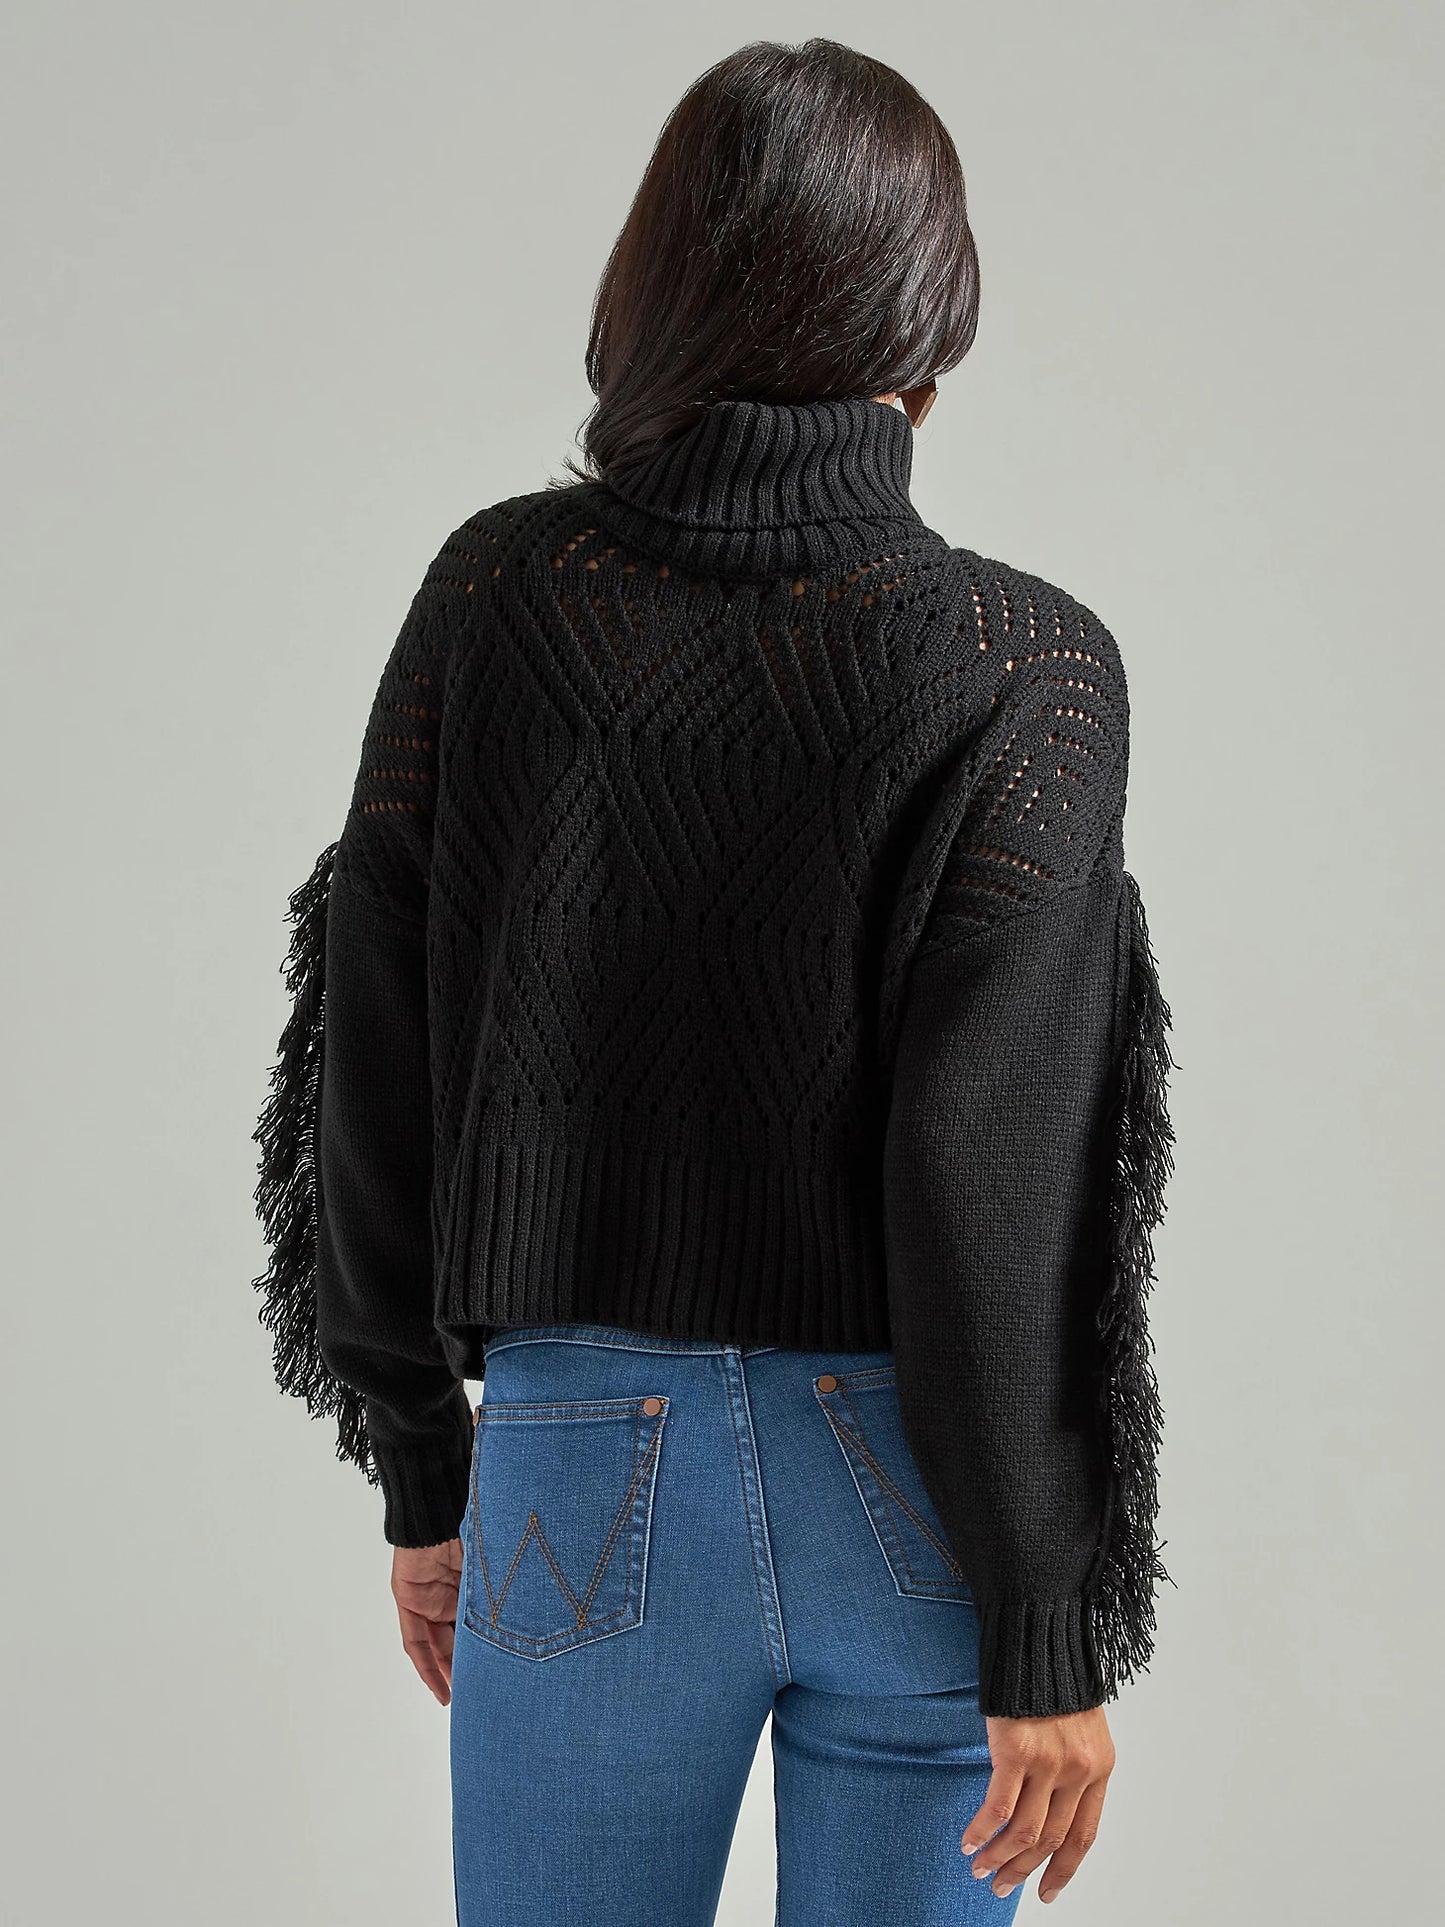 Wrangler Black Fringe Sweater